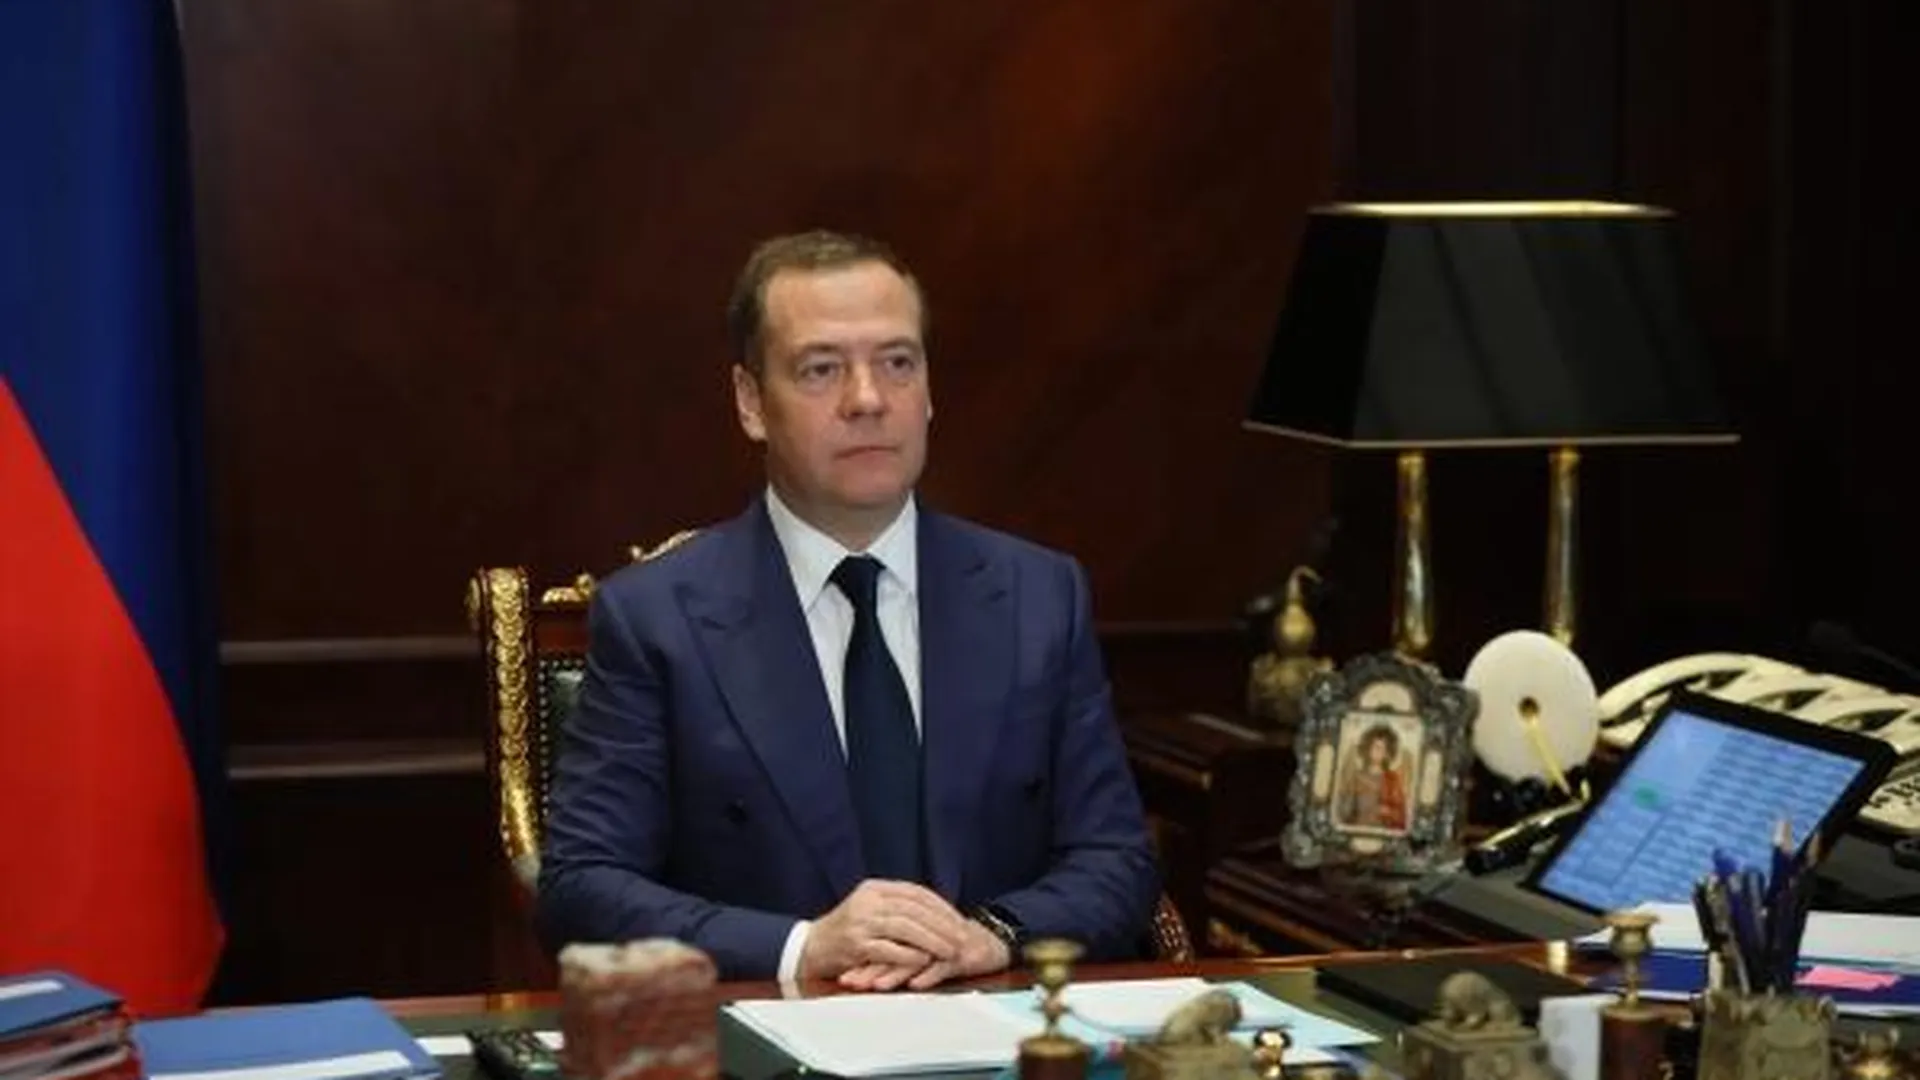 Медведев предупредил предателей Родины, что у моратория на смертную казнь могут быть исключения